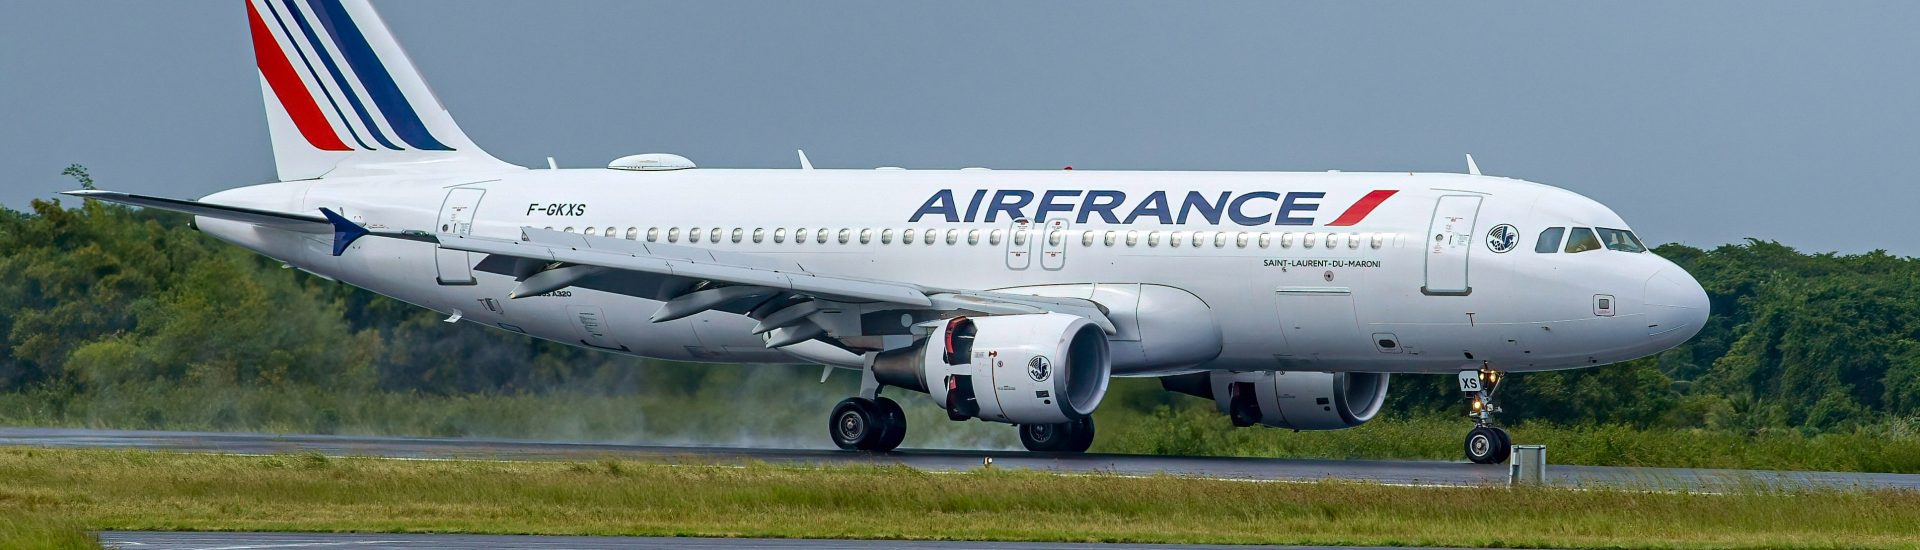 A320-200 Air France F-GKXS